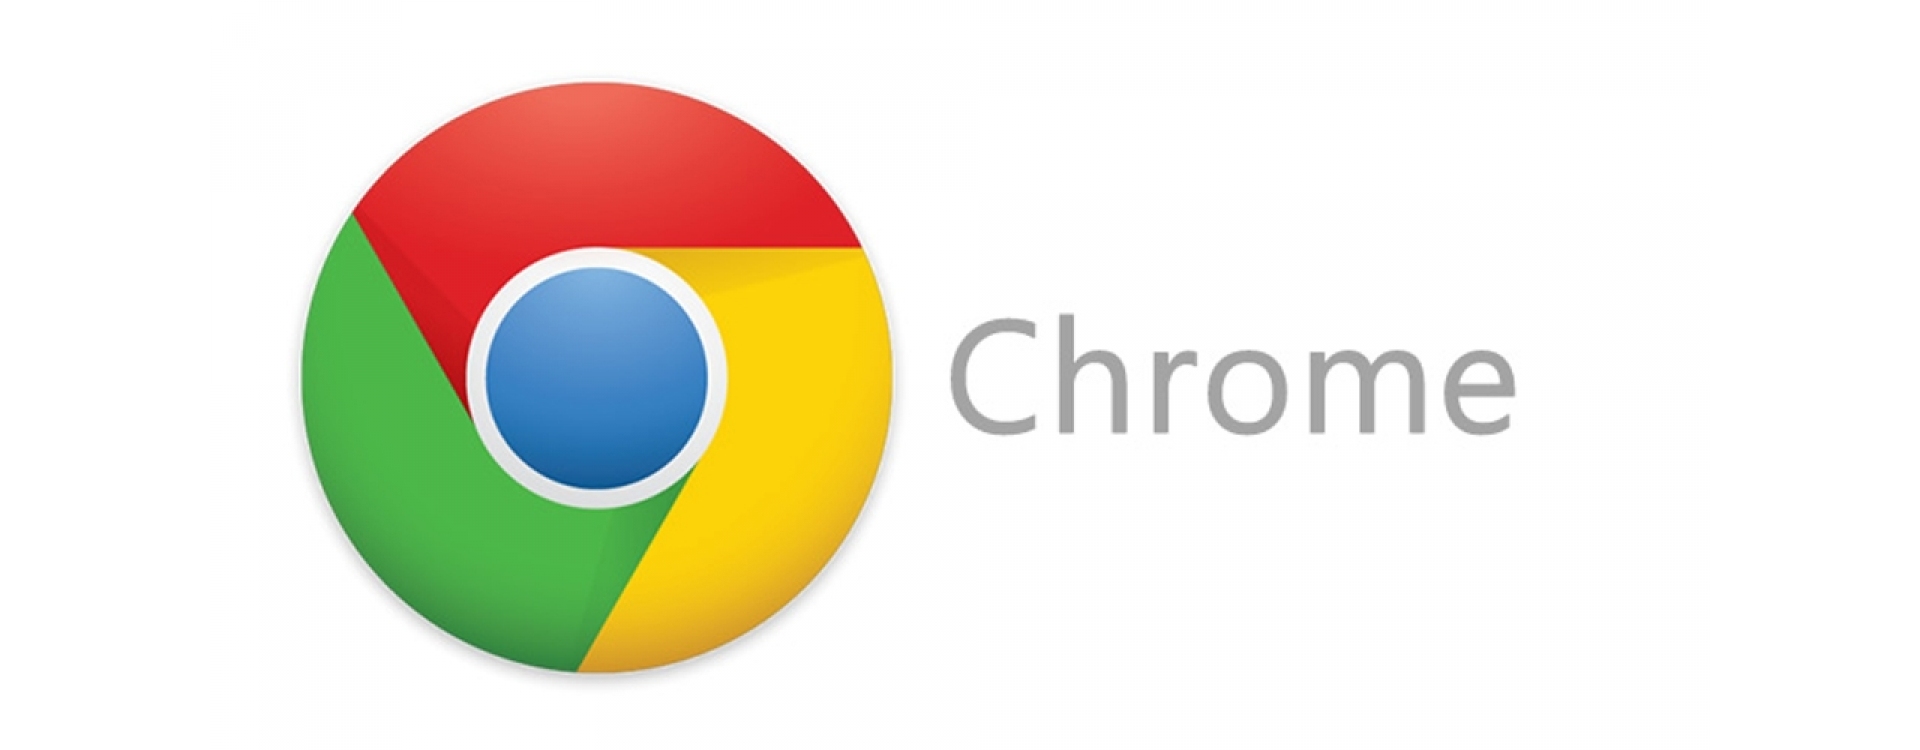 Internet pode ficar mais rápida e barata com Google Chrome 